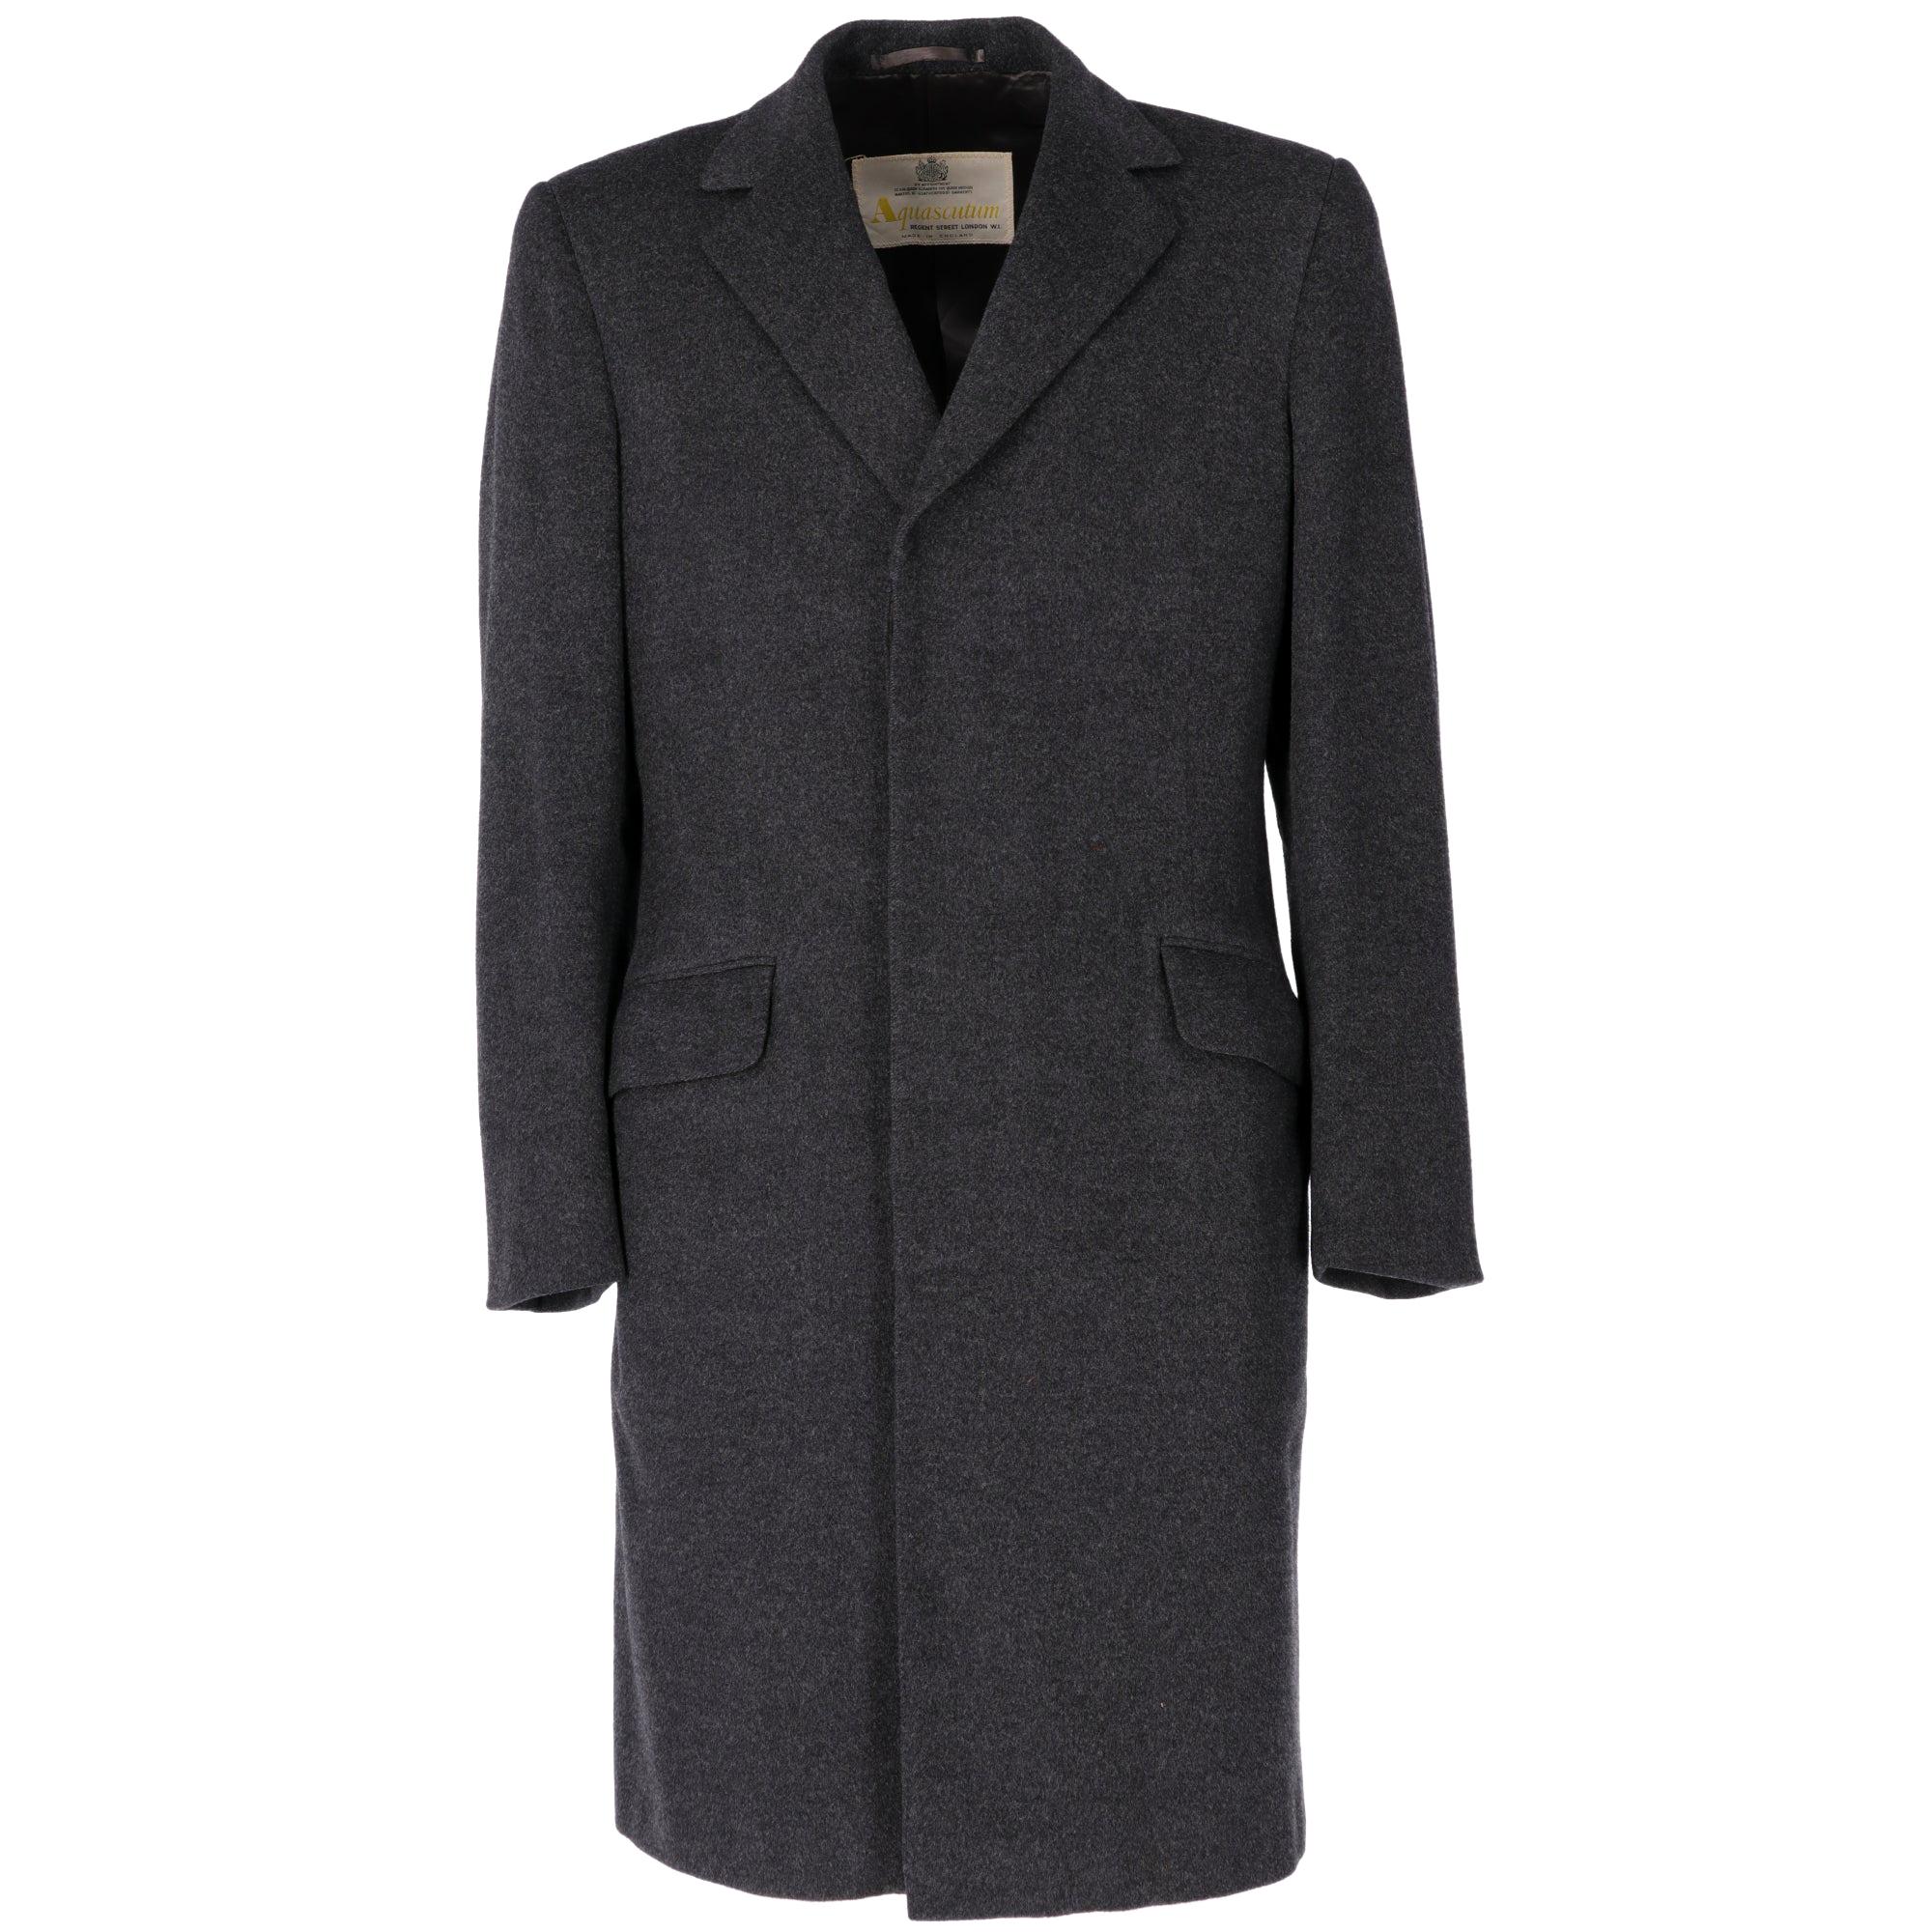 Womens Amicale 100% Cashmere Coat Size M/L Vtg Black Long Lined - Union ...